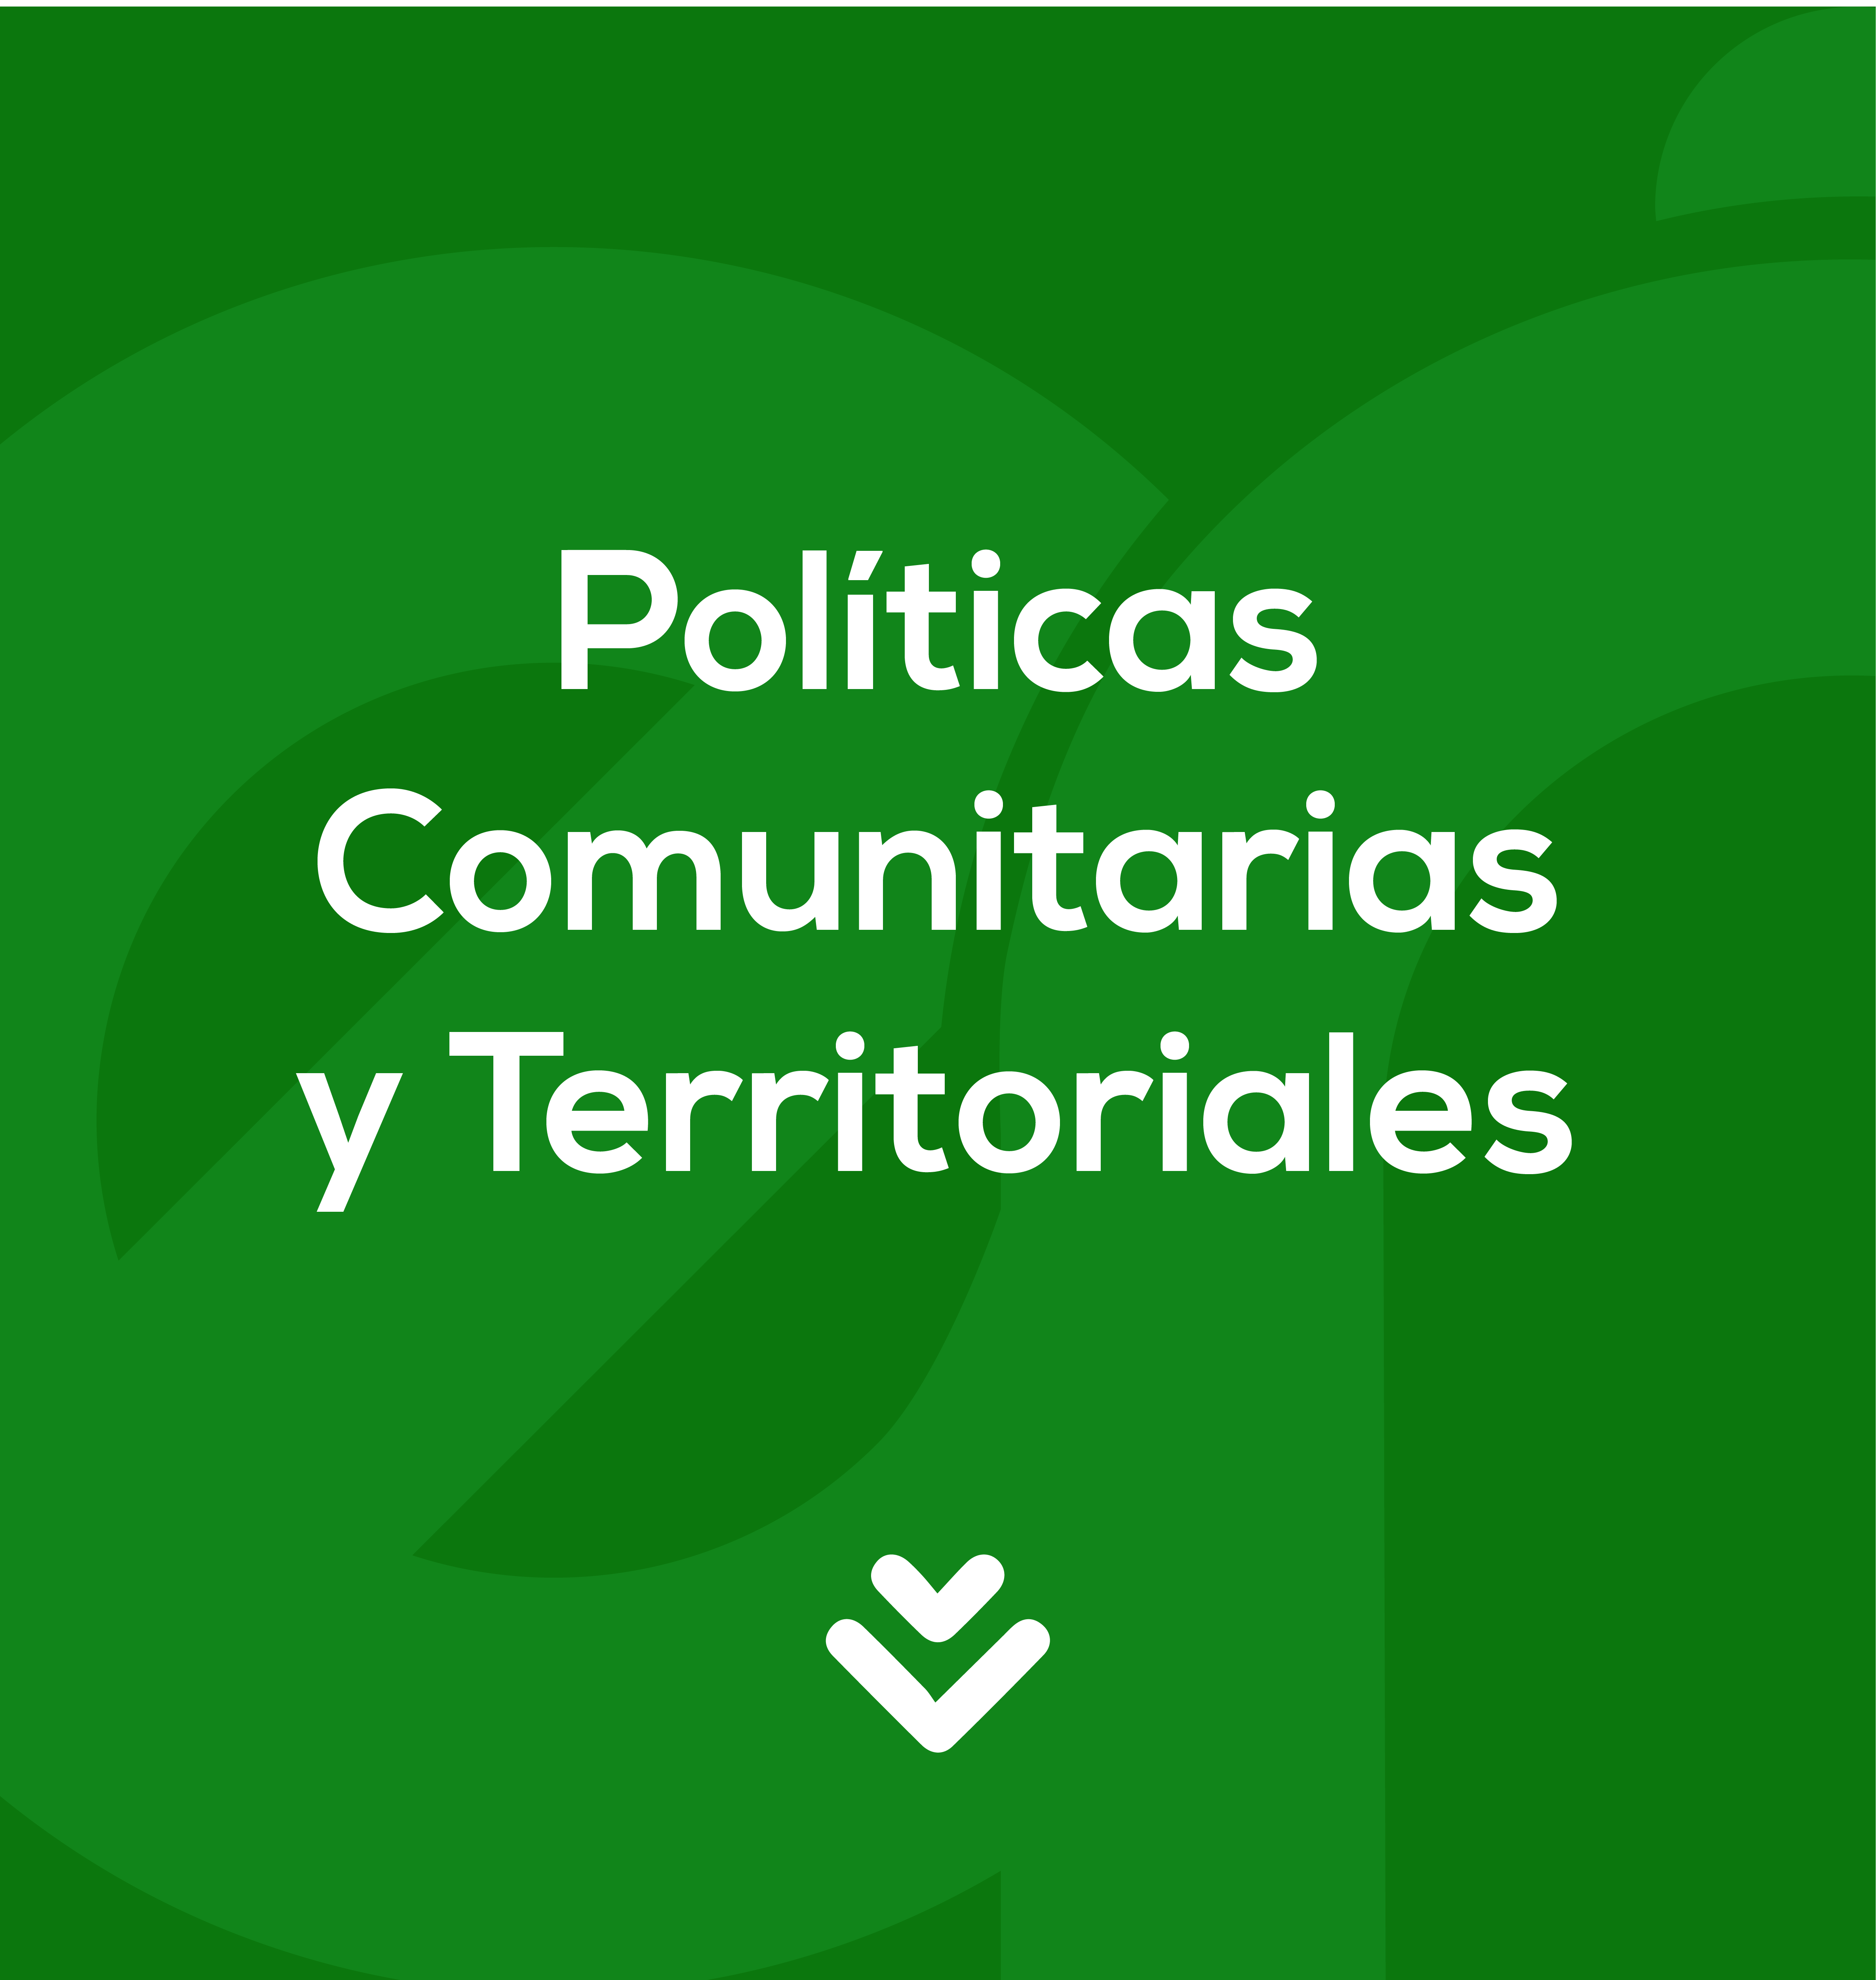 POLITICAS COMUNITARIAS Y TERRITORIALES